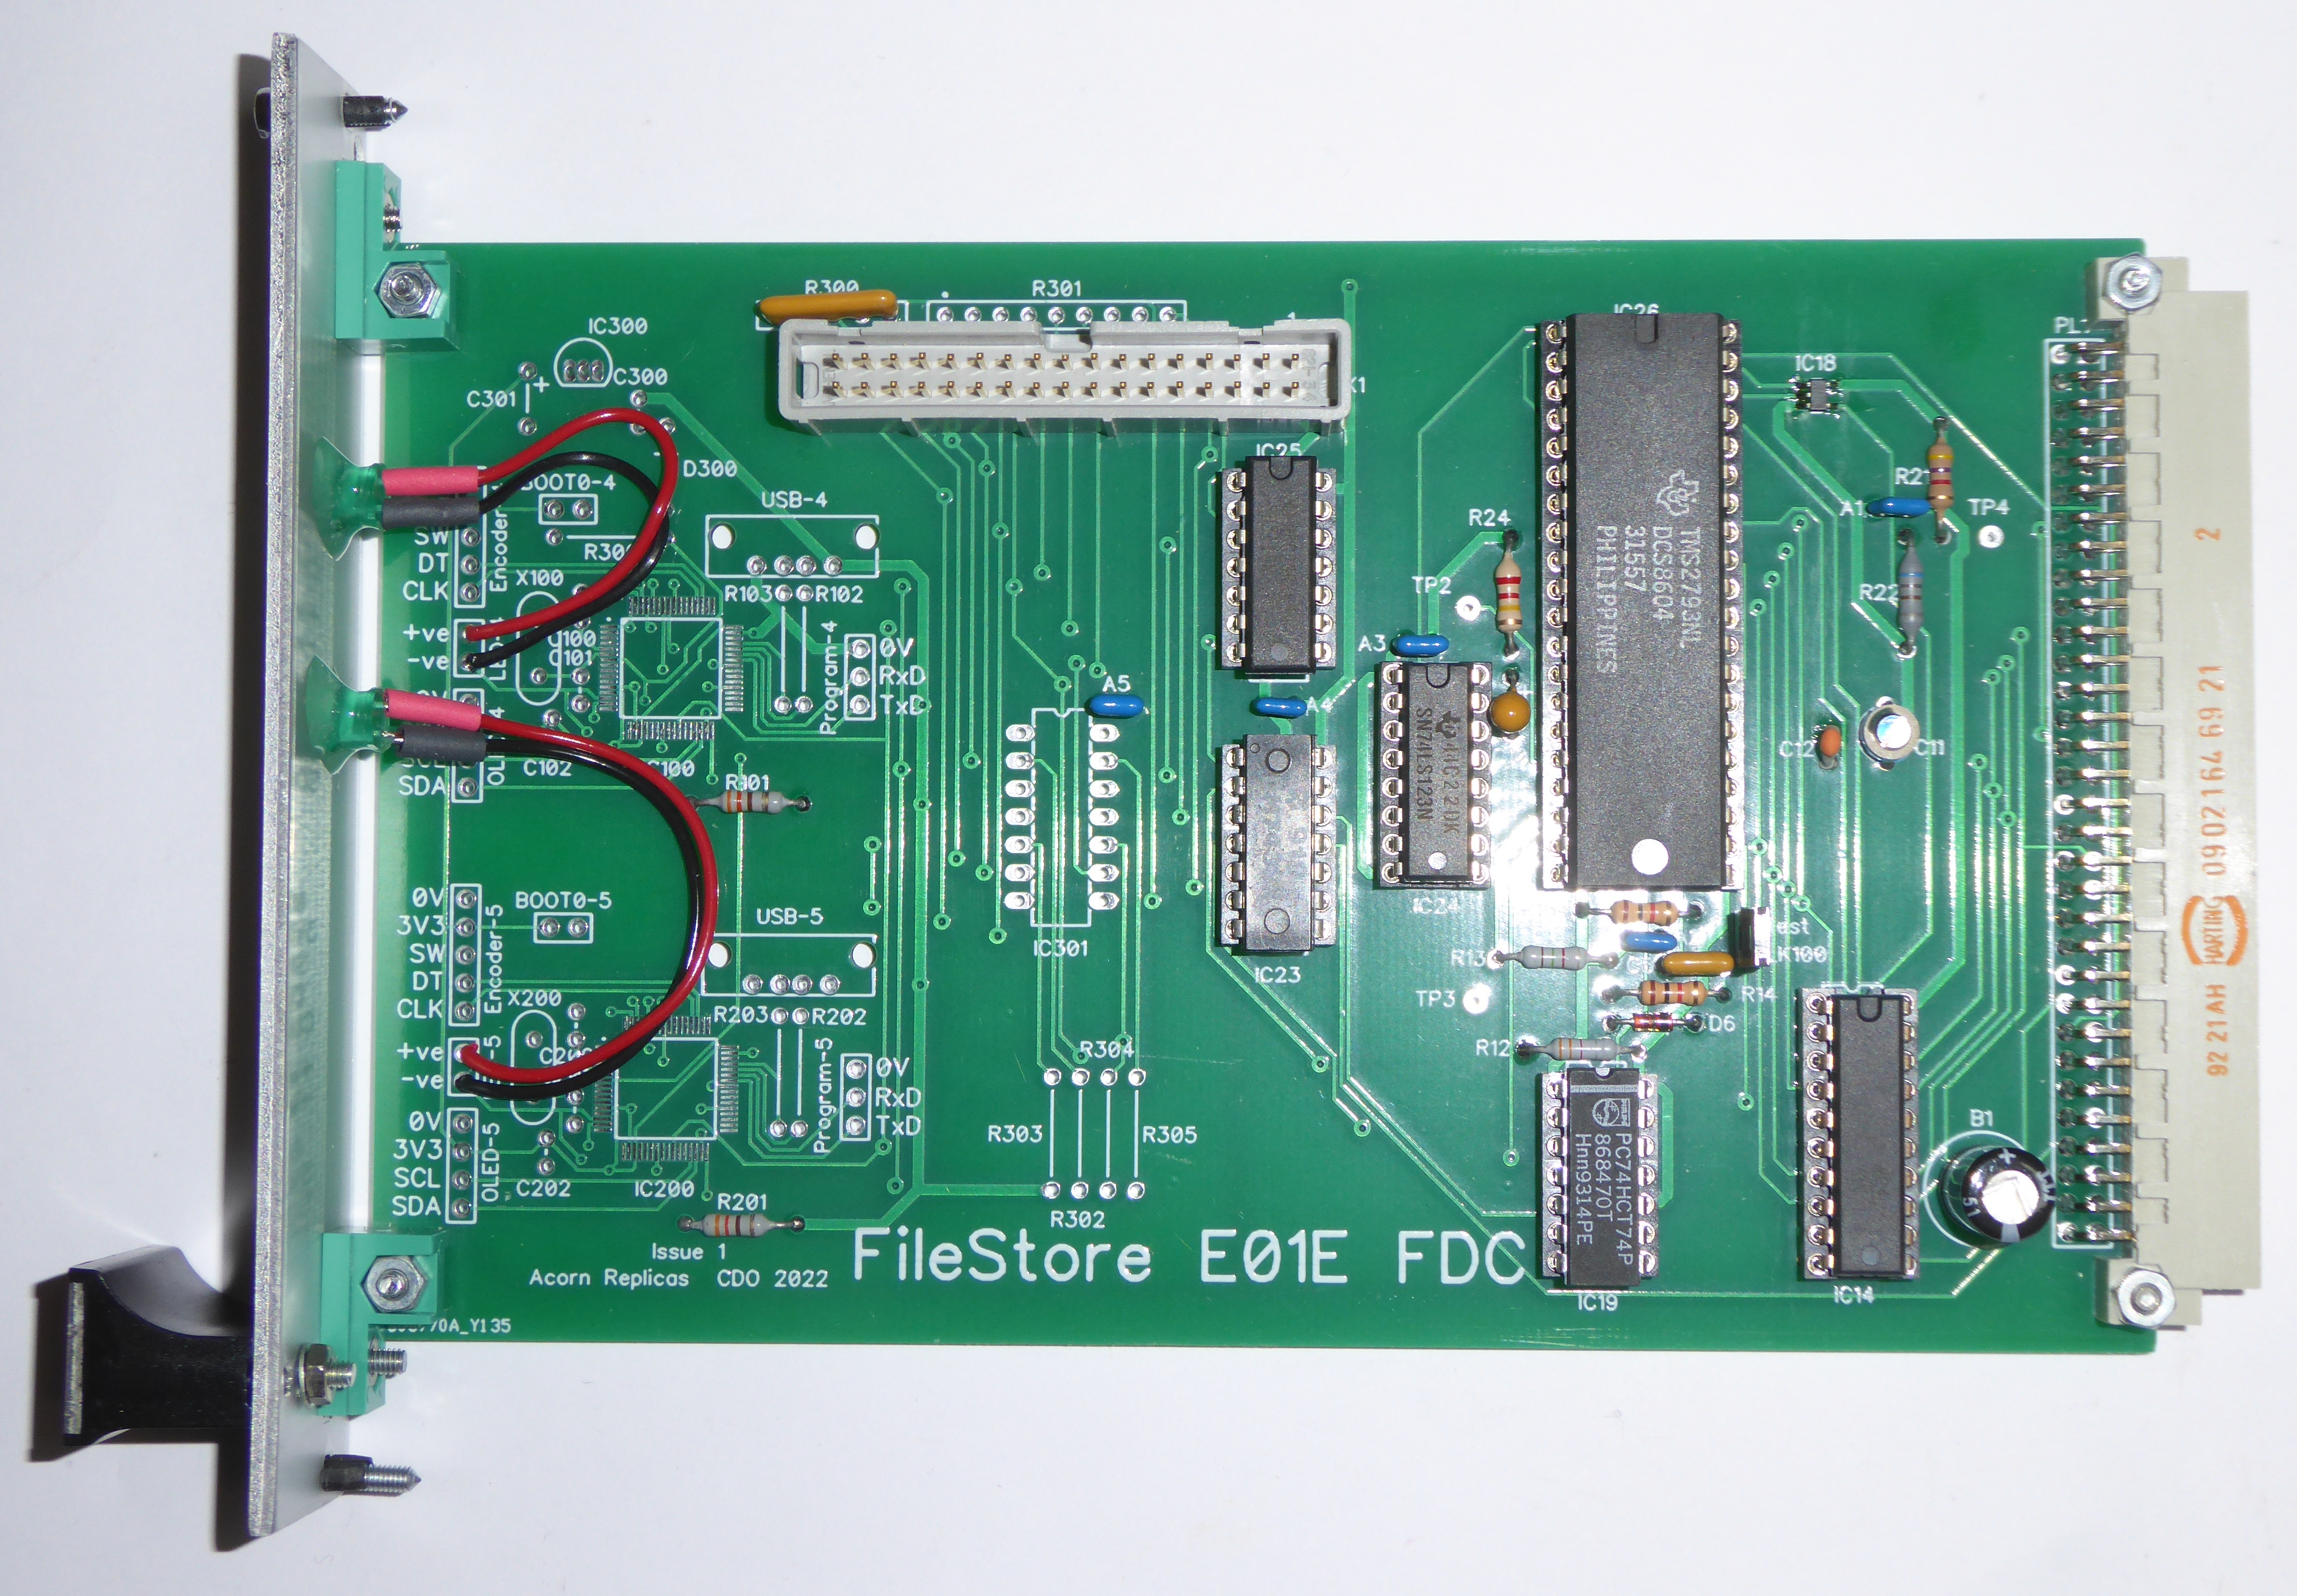 FileStore E01E FDC (Drives)